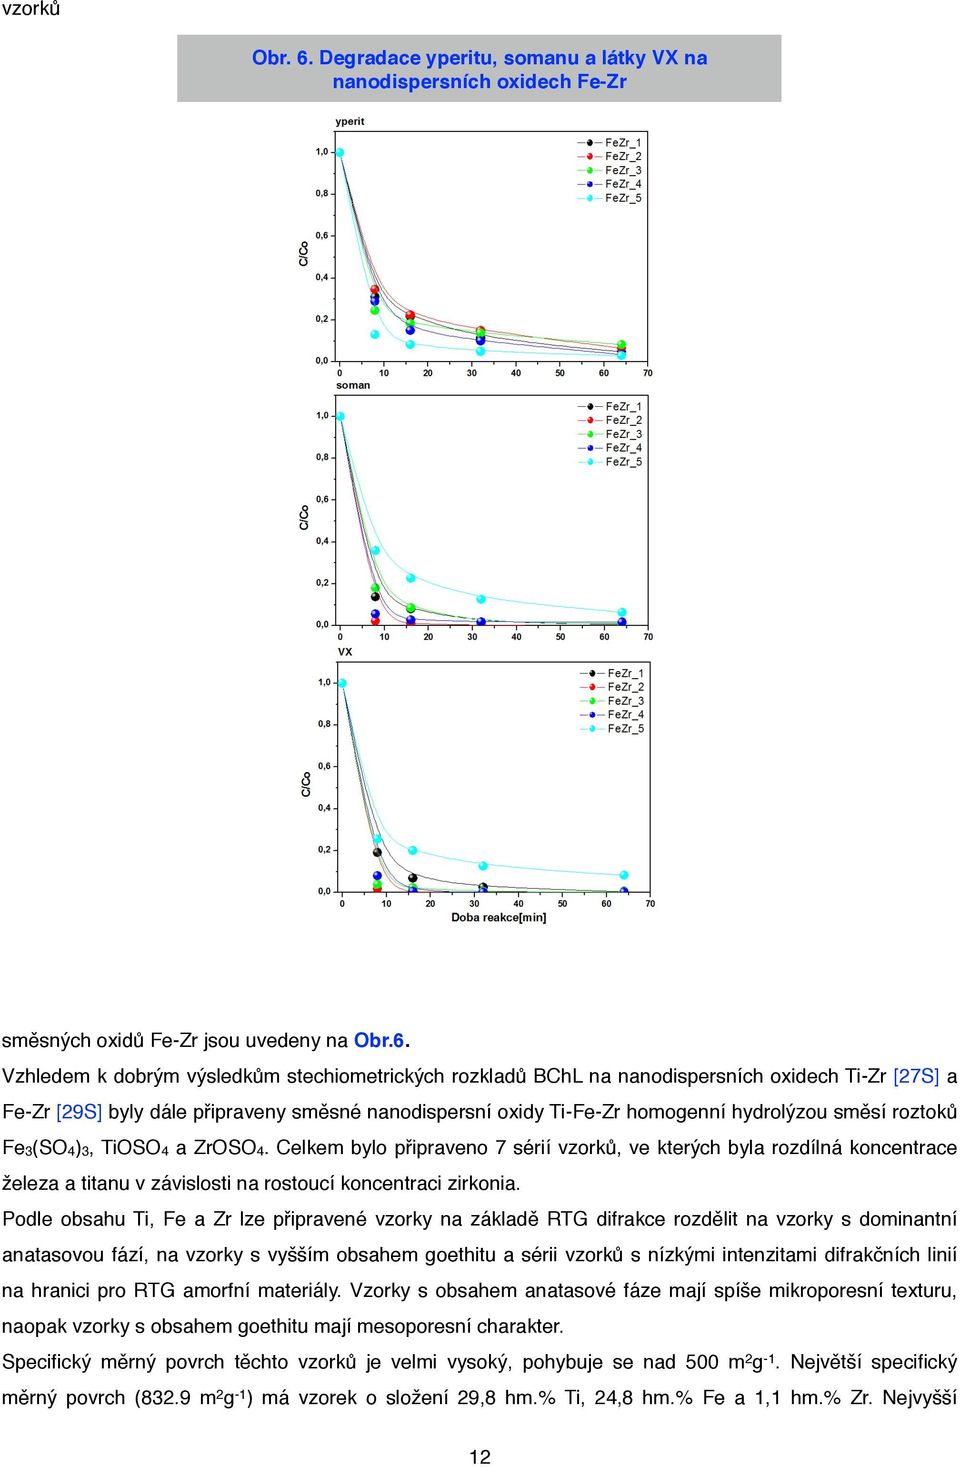 Vzhledem k dobrým výsledkům stechiometrických rozkladů BChL na nanodispersních oxidech Ti-Zr [27S] a Fe-Zr [29S] byly dále připraveny směsné nanodispersní oxidy Ti-Fe-Zr homogenní hydrolýzou směsí